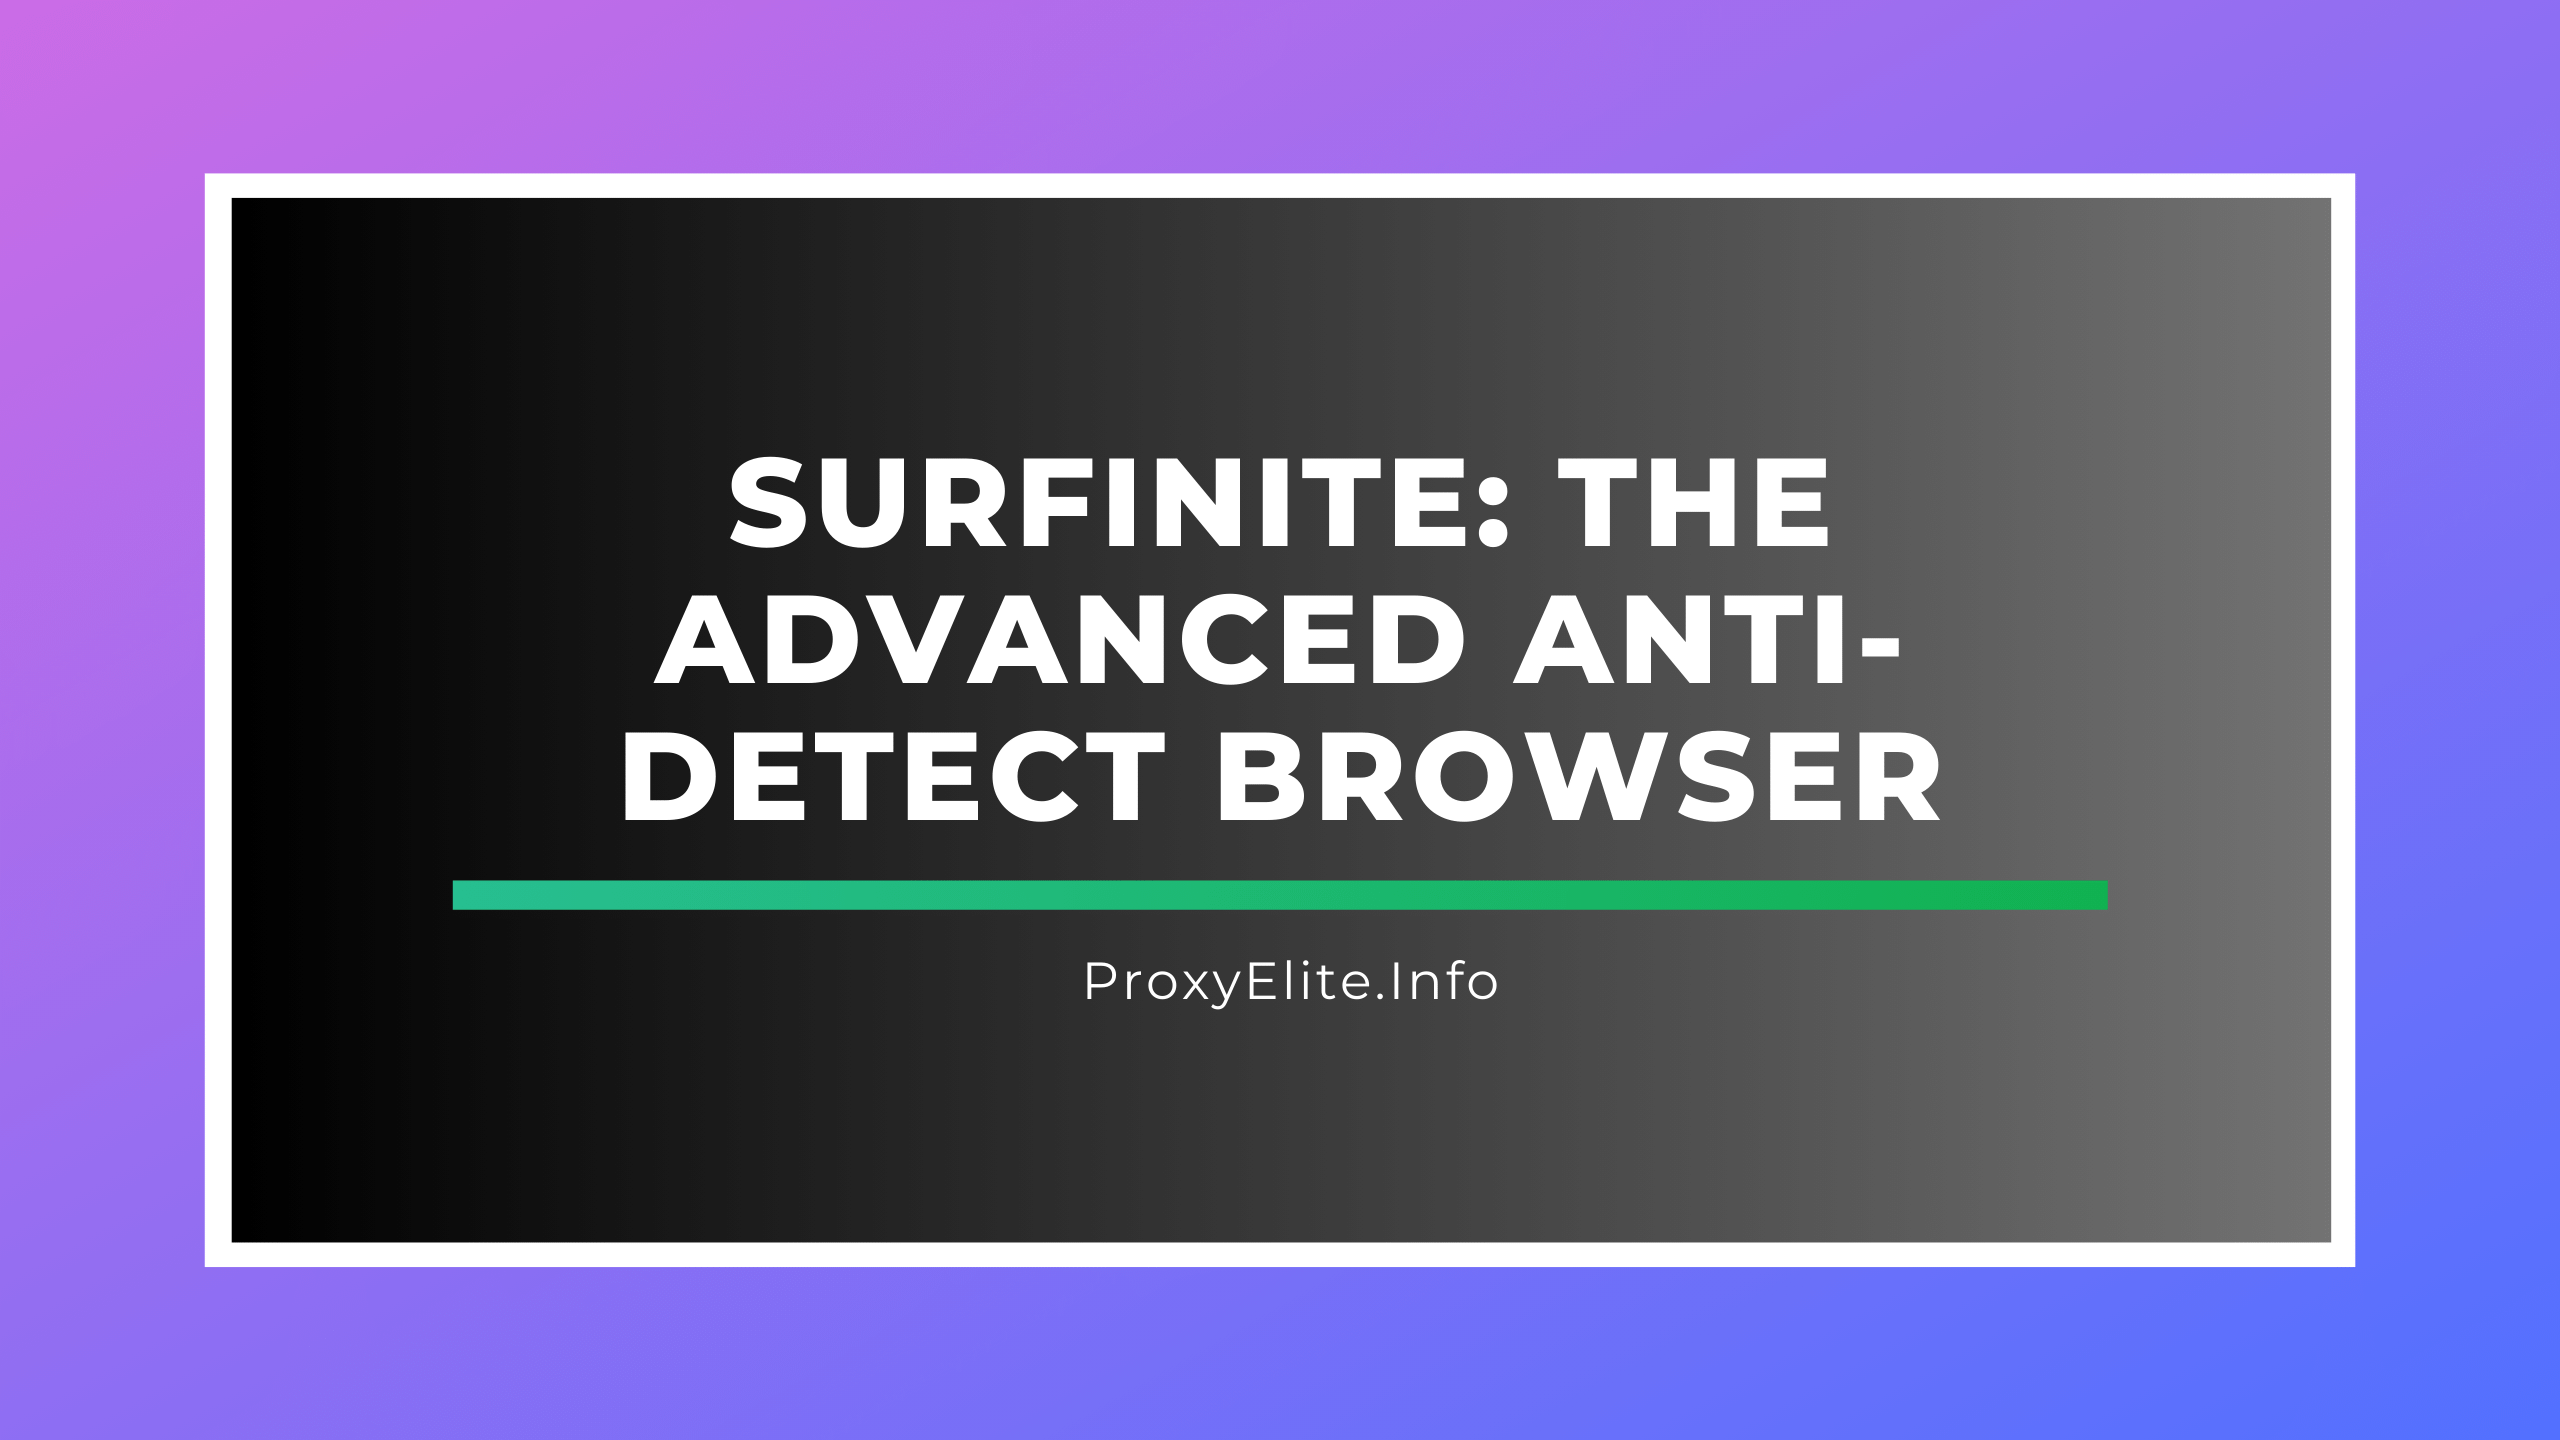 Surfinite: The Advanced Anti-Detect Browser